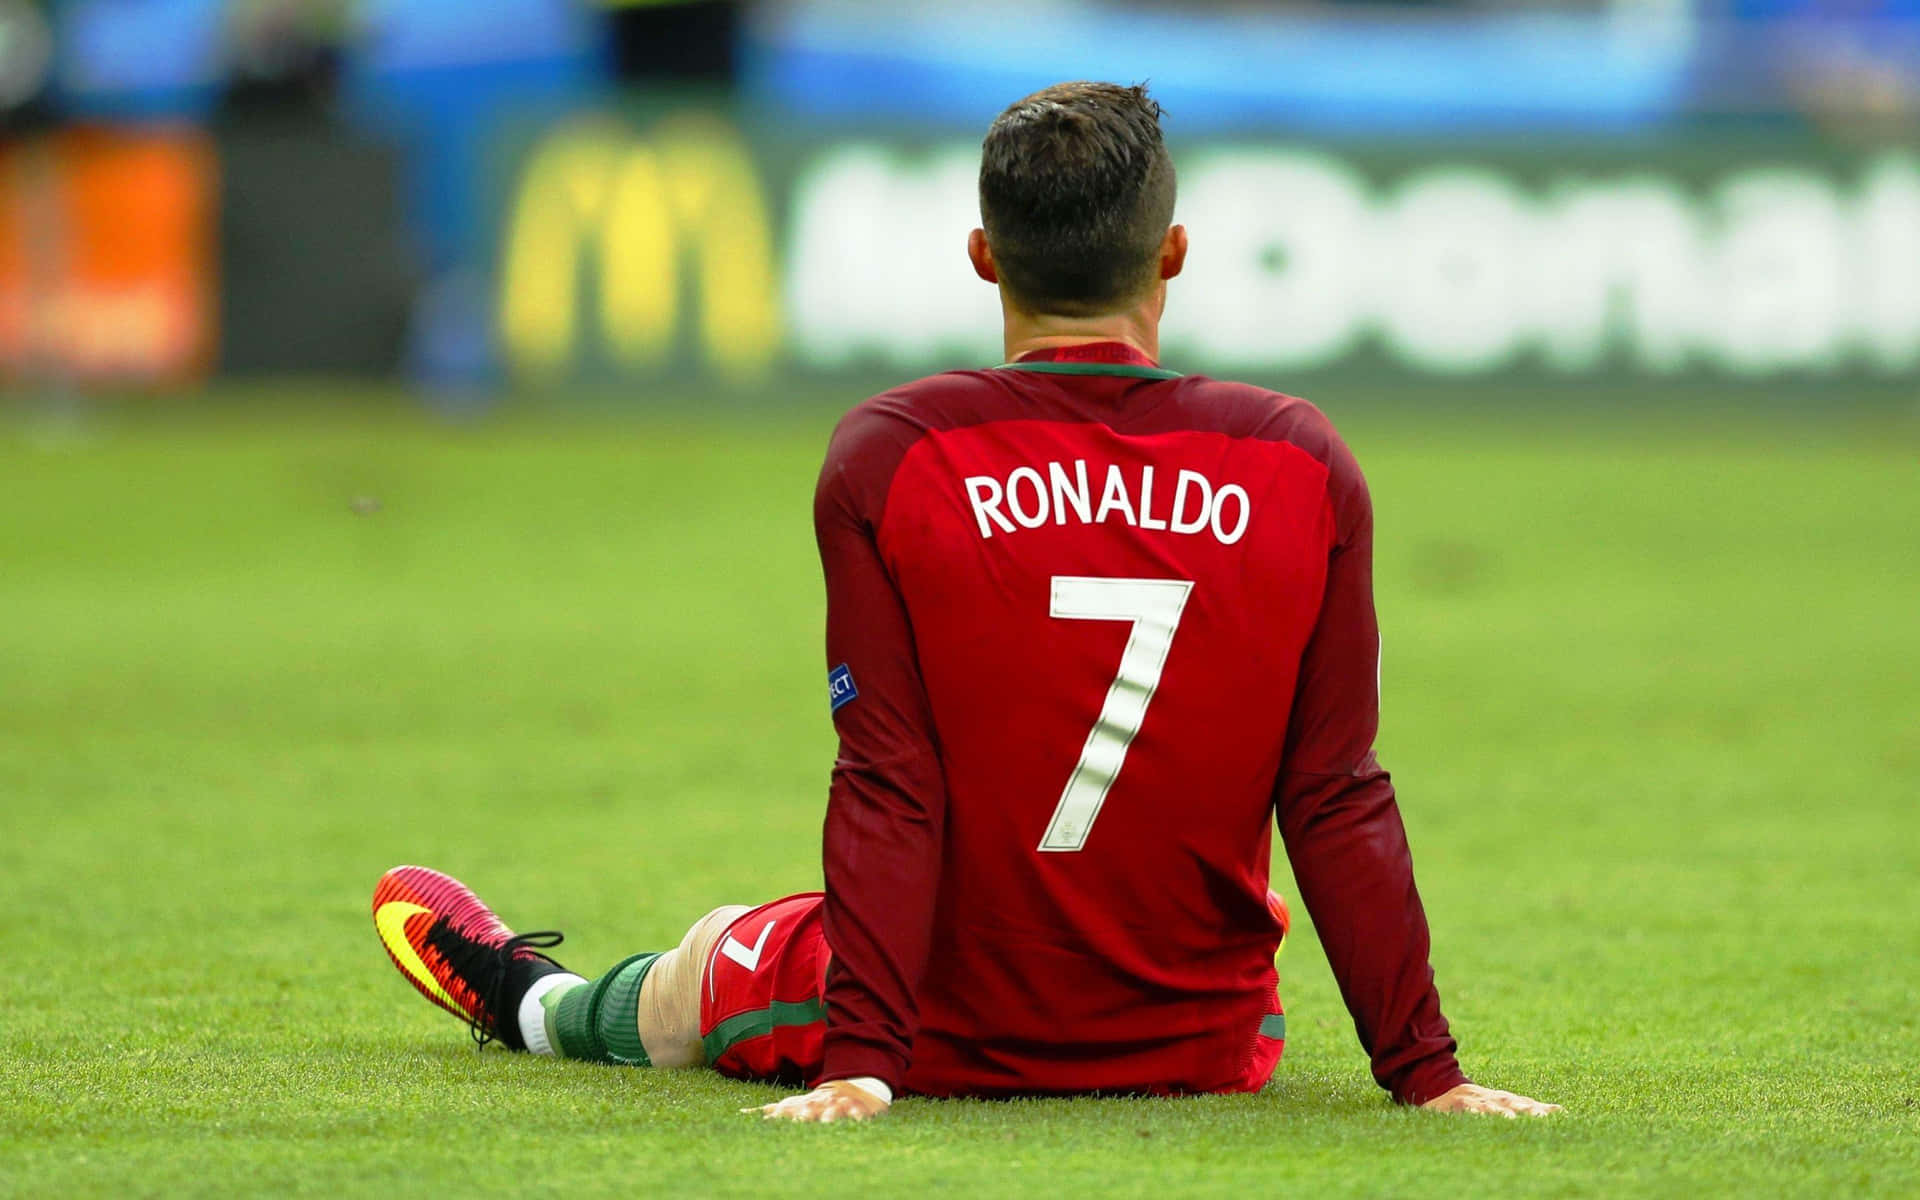 Fotbollsspelarencristiano Ronaldos Bild.